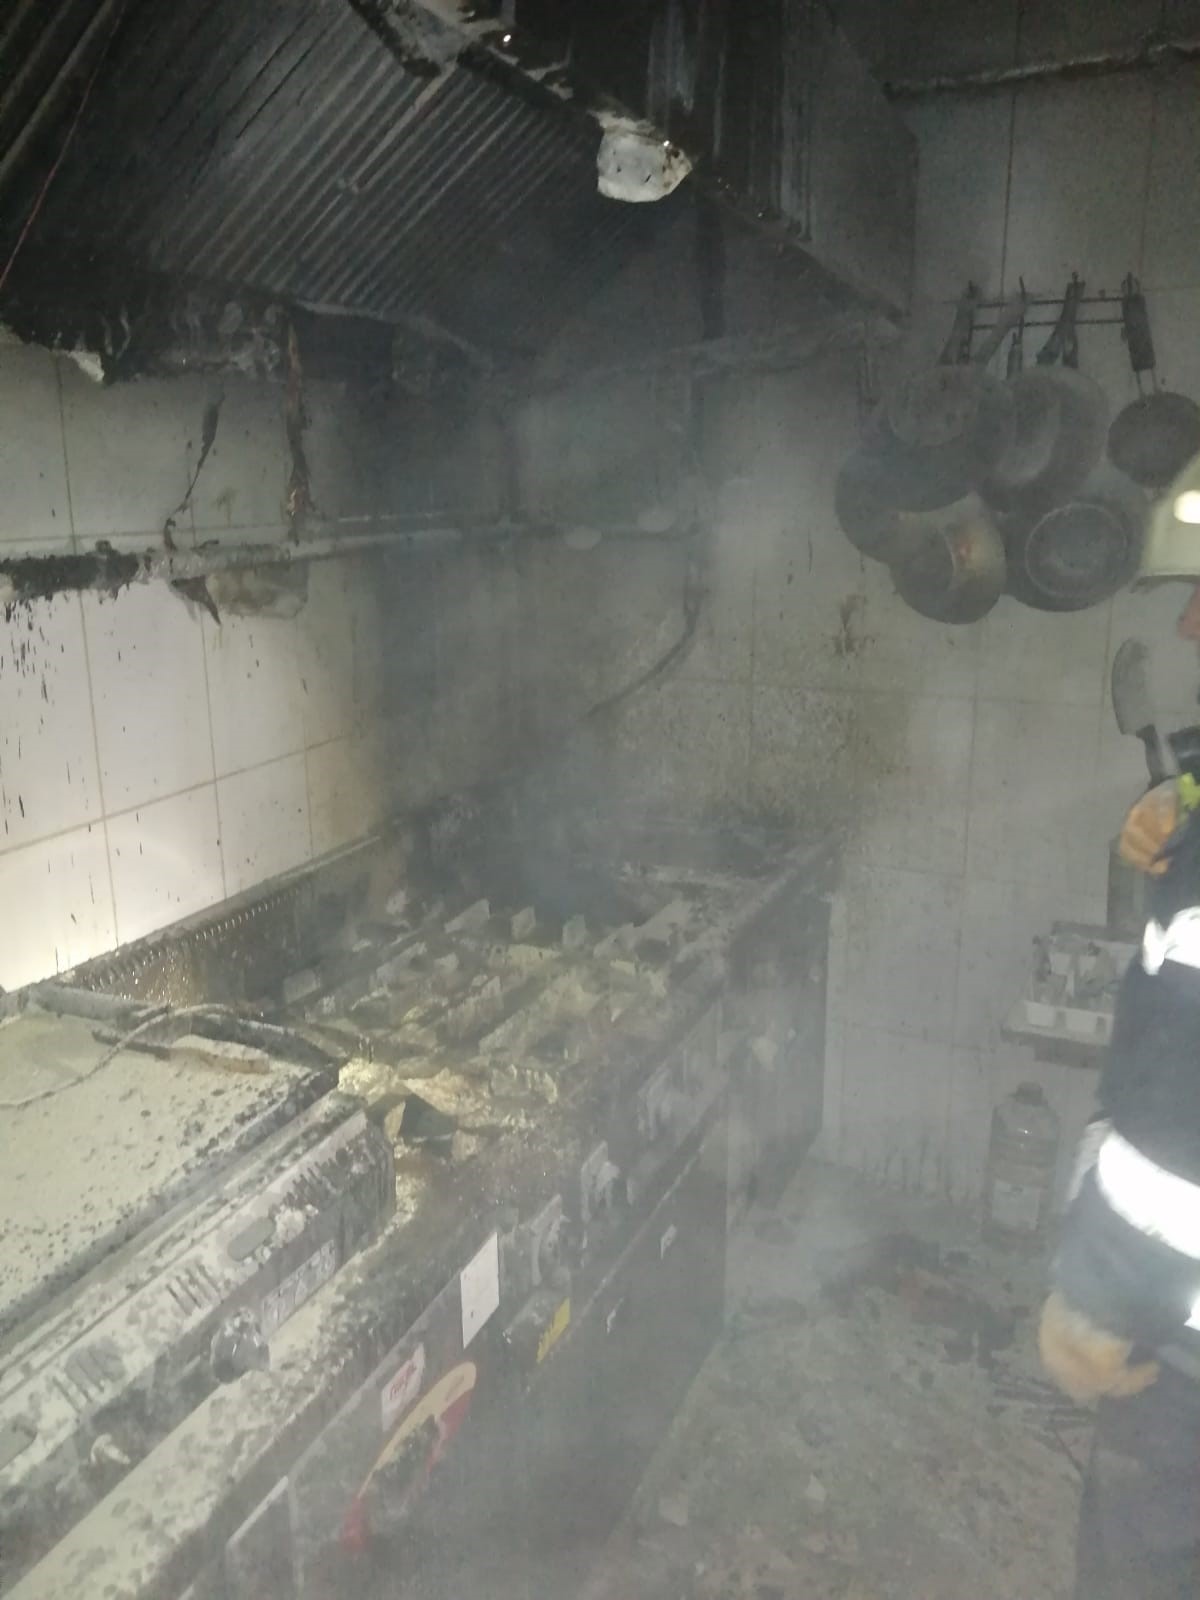 Burdur'da Kafede Korkutan Yangın! Müşteriler Büyük Panik Yaşadı 